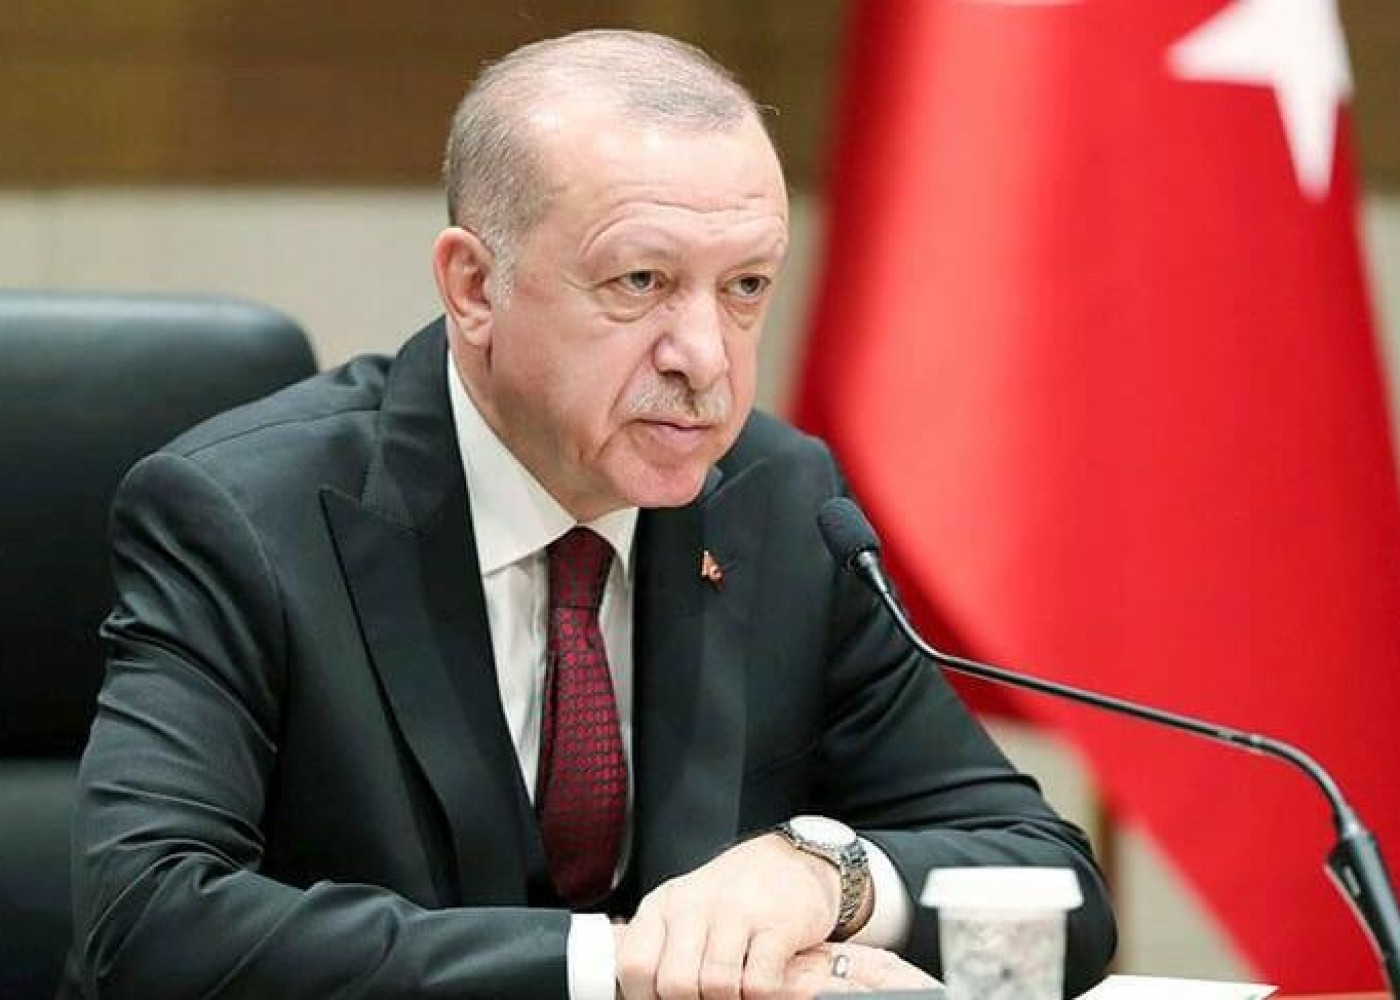 "ABŞ Türkiyə ilə Yunanıstan arasında gərginliyin artmasına çalışır" - Ərdoğan